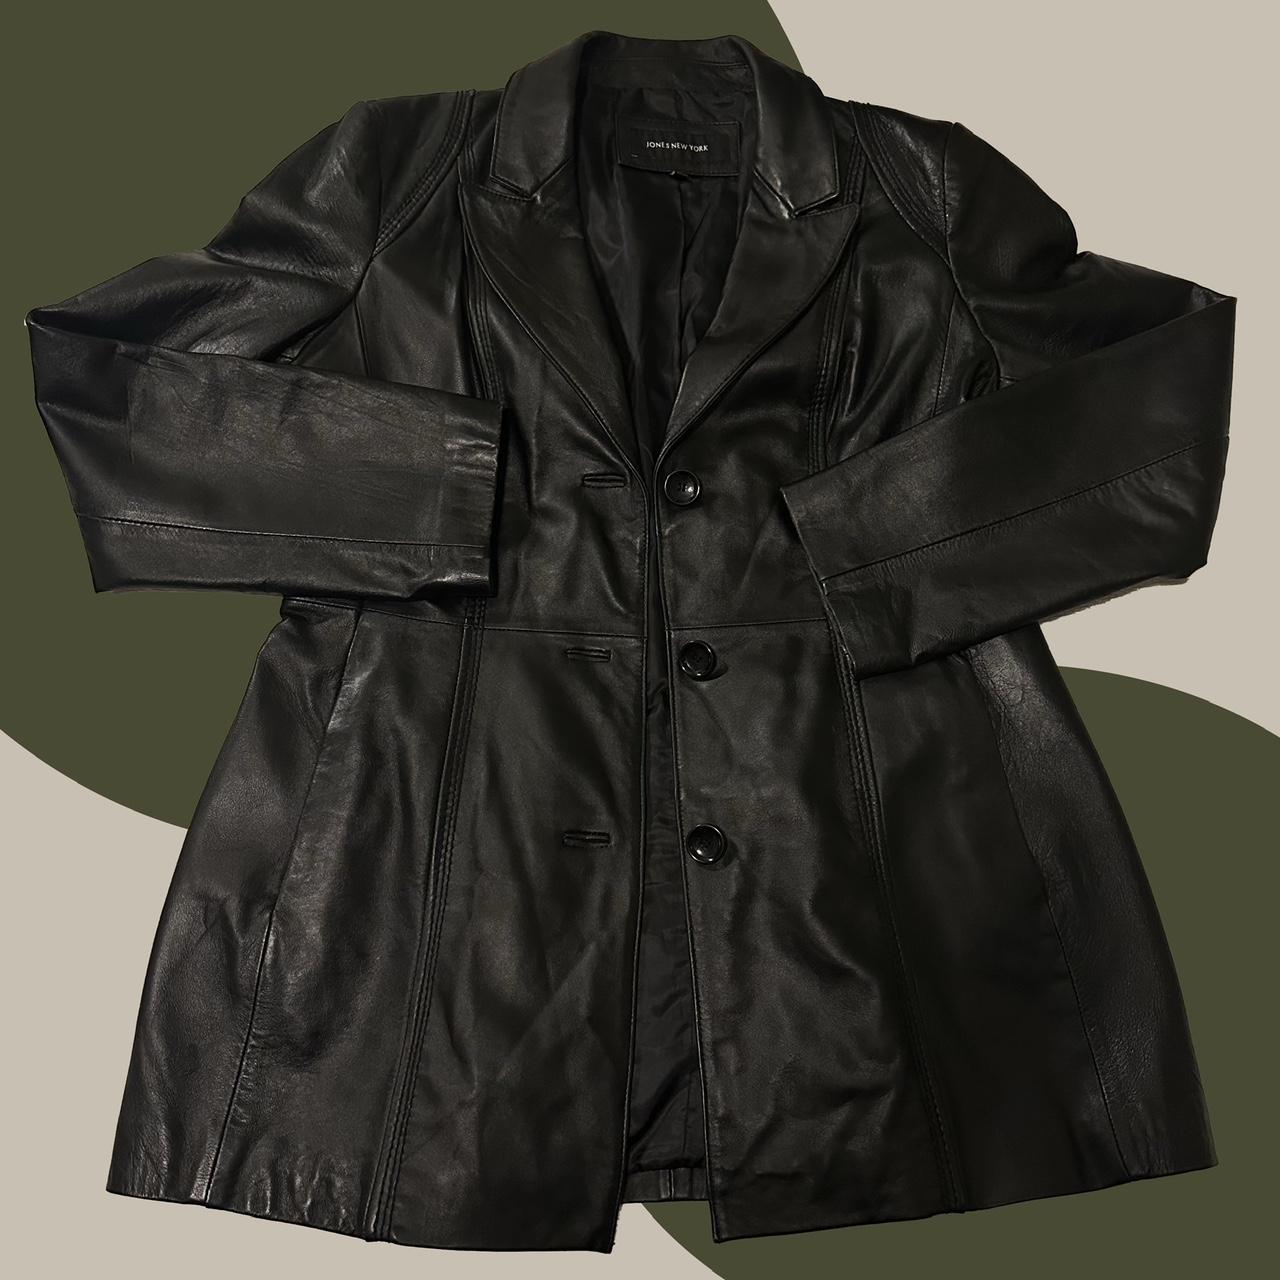 Jones New York Women's Black Coat